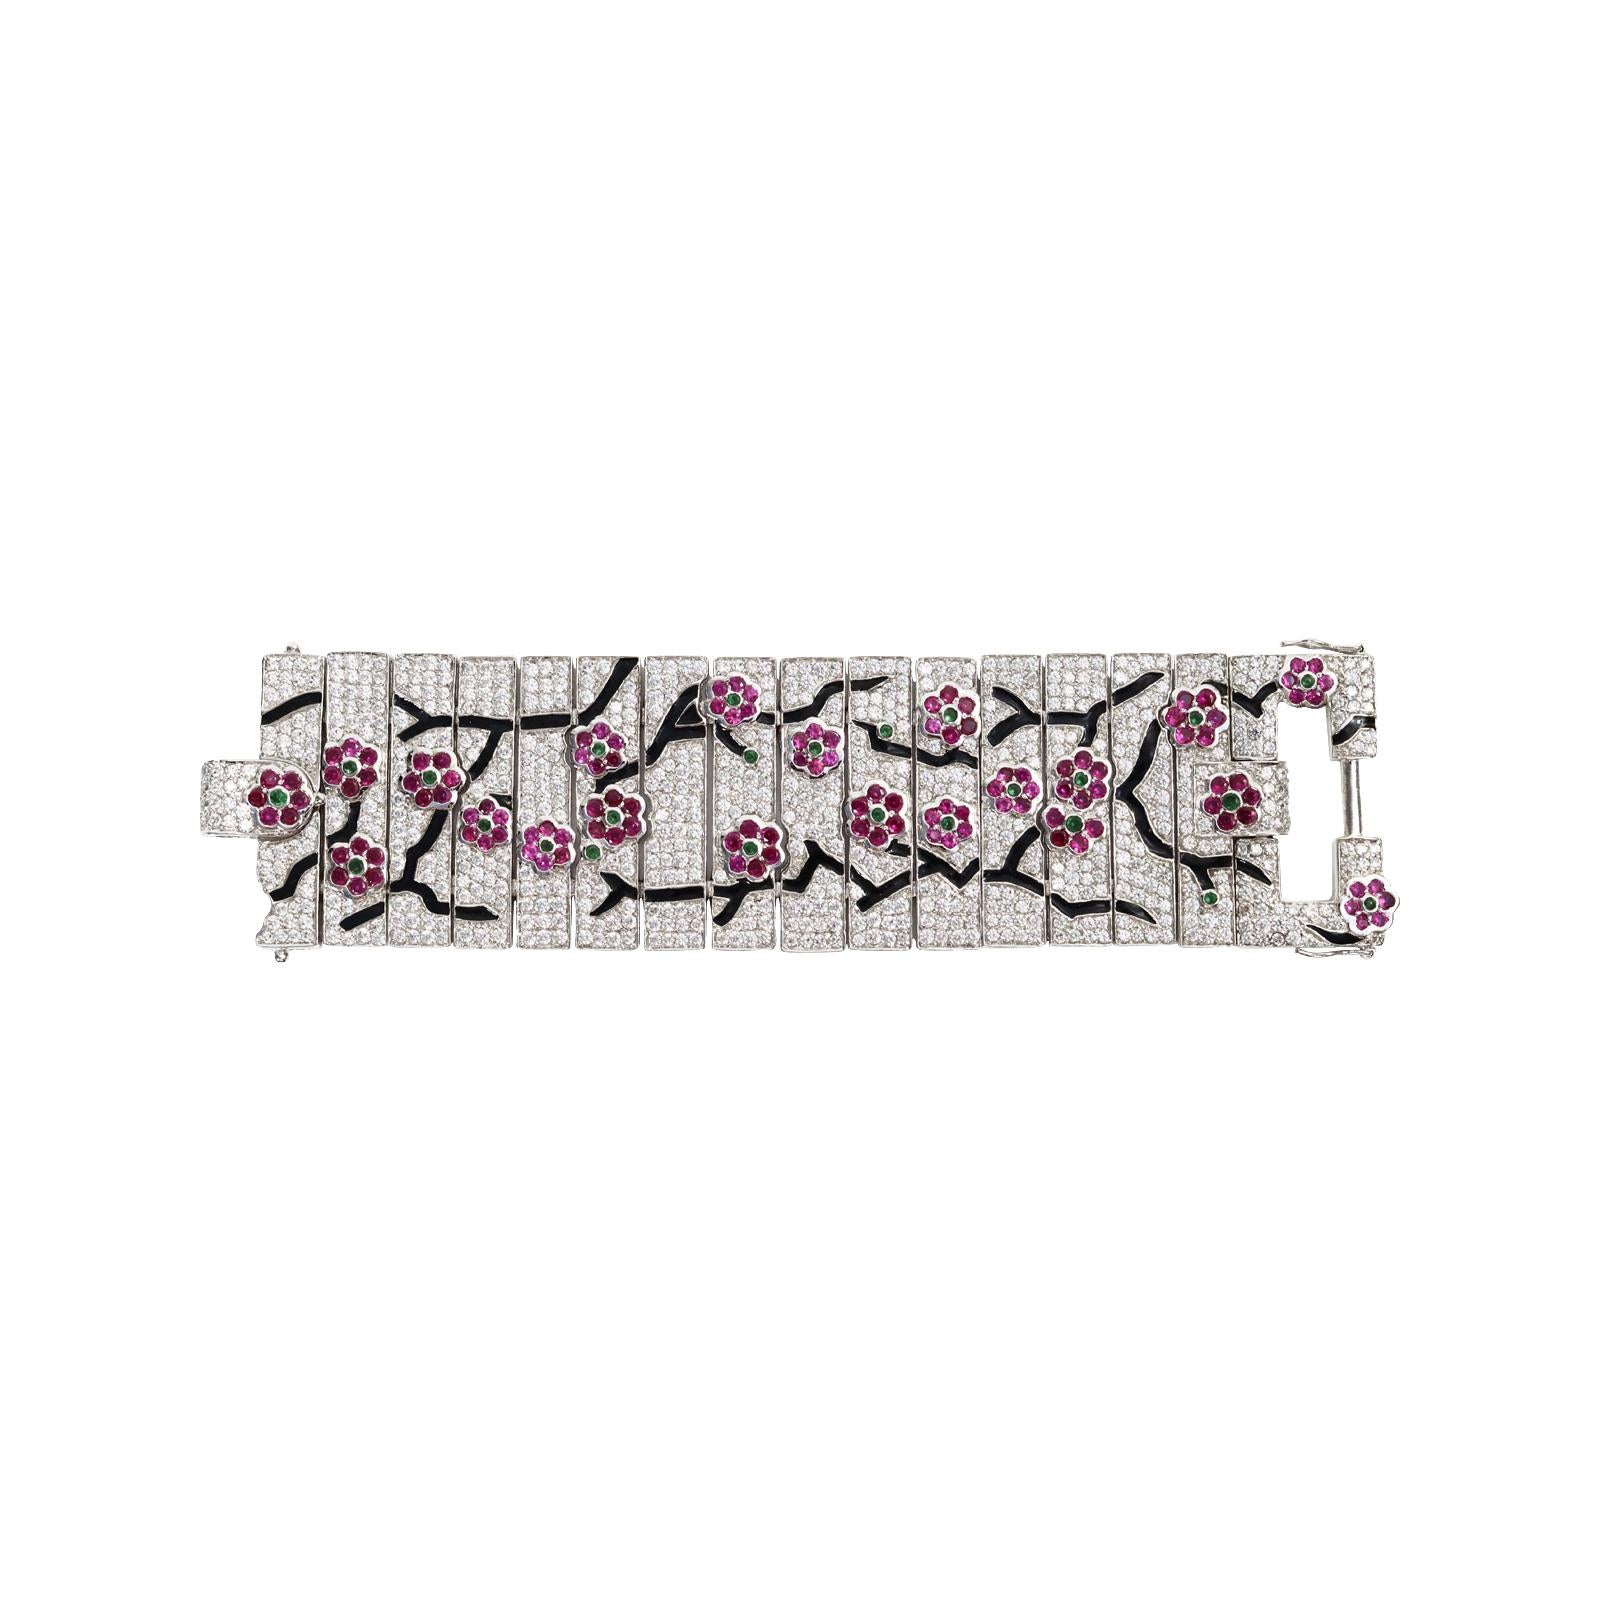 Vintage Jarin Art Deco Diamante Flower Armband Circa 2000s. So atemberaubend. Sieht aus wie ein japanischer Garten.  Es gibt Stäbe aus Pflaster, die mit schwarzer Emaille überzogen sind, und darauf befinden sich rosa Diamantenblumen. Es ist ein